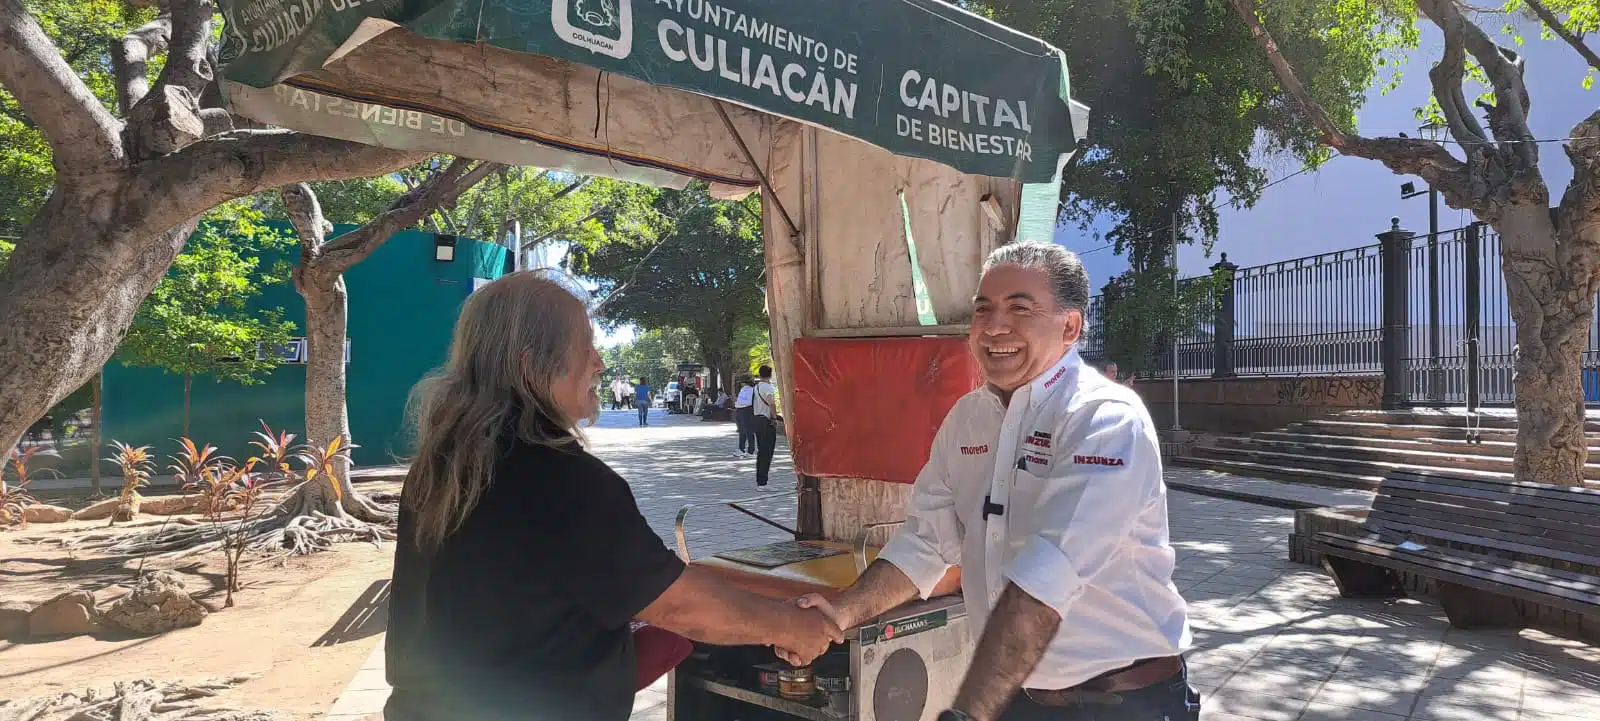 Enrique Inzunza saludando a una persona en Culiacán